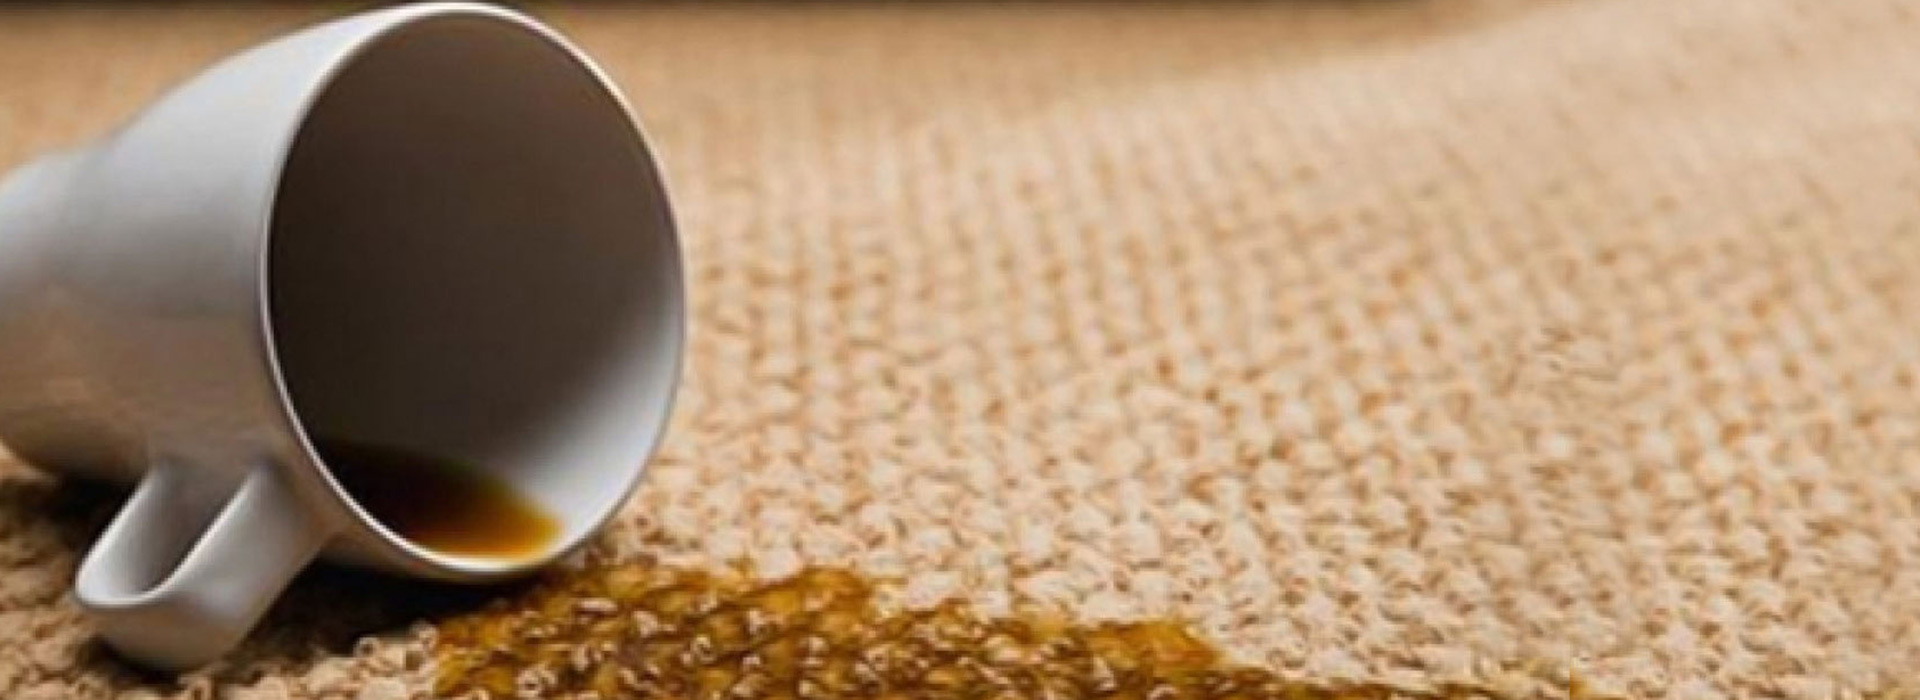 Skidanje fleka | Kako skinuti fleke od kafe?